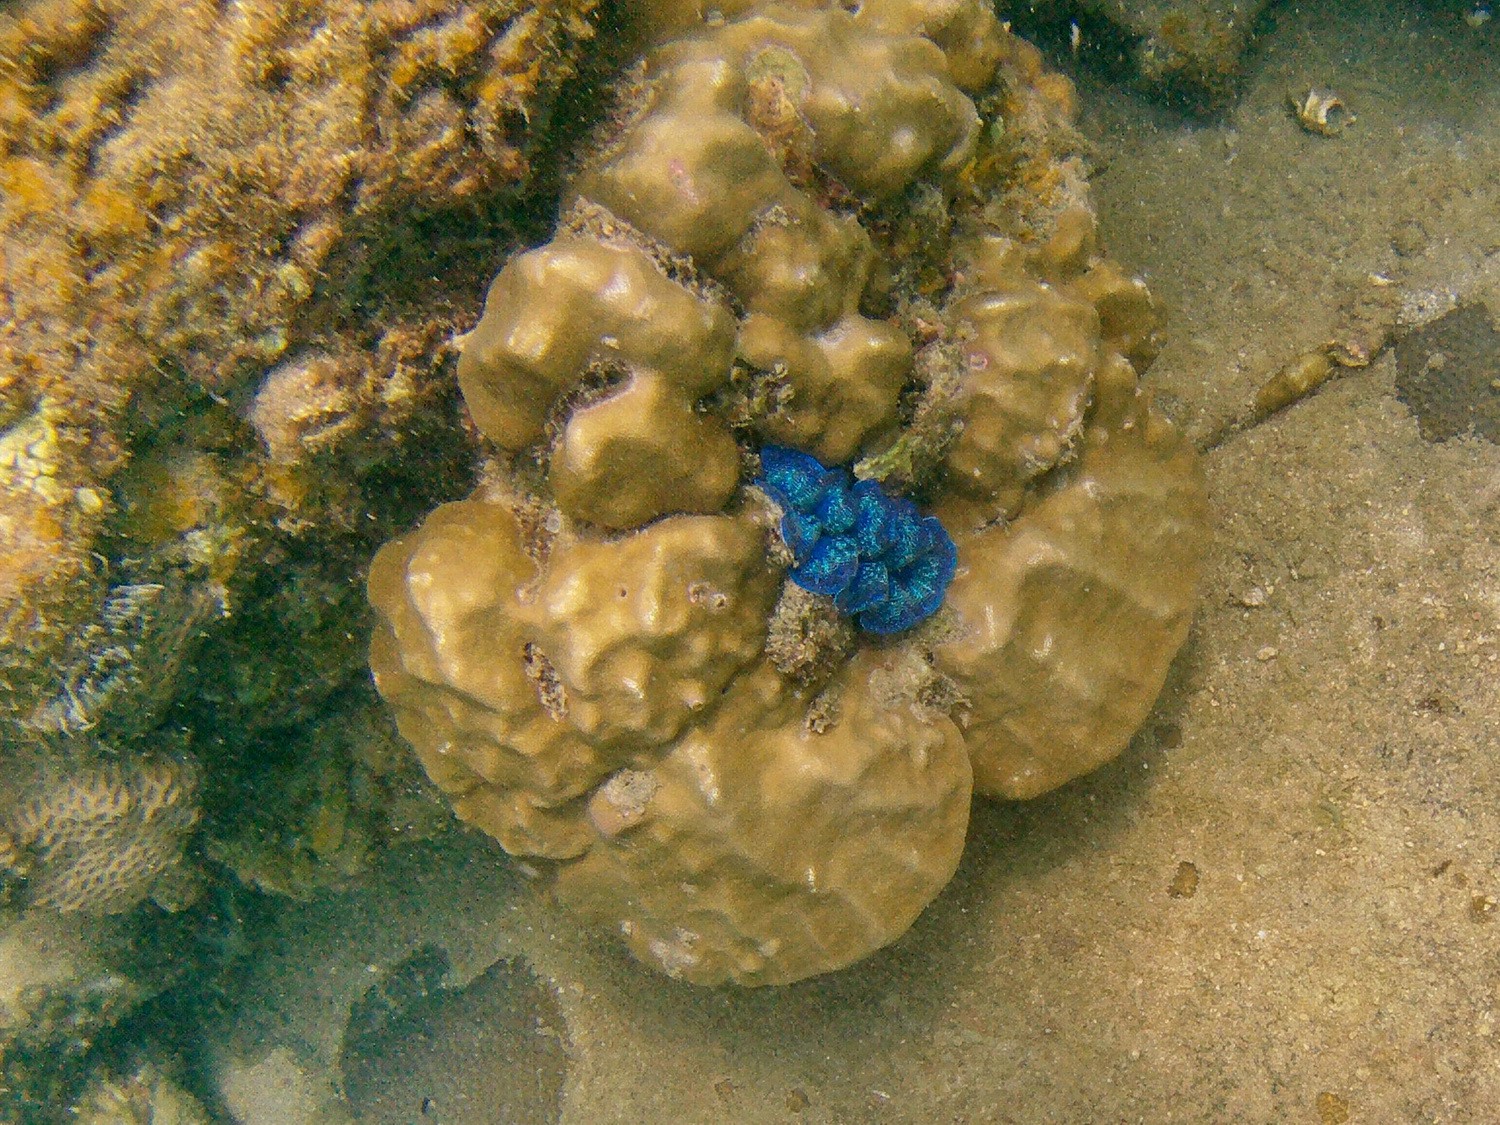 Dark blue clam